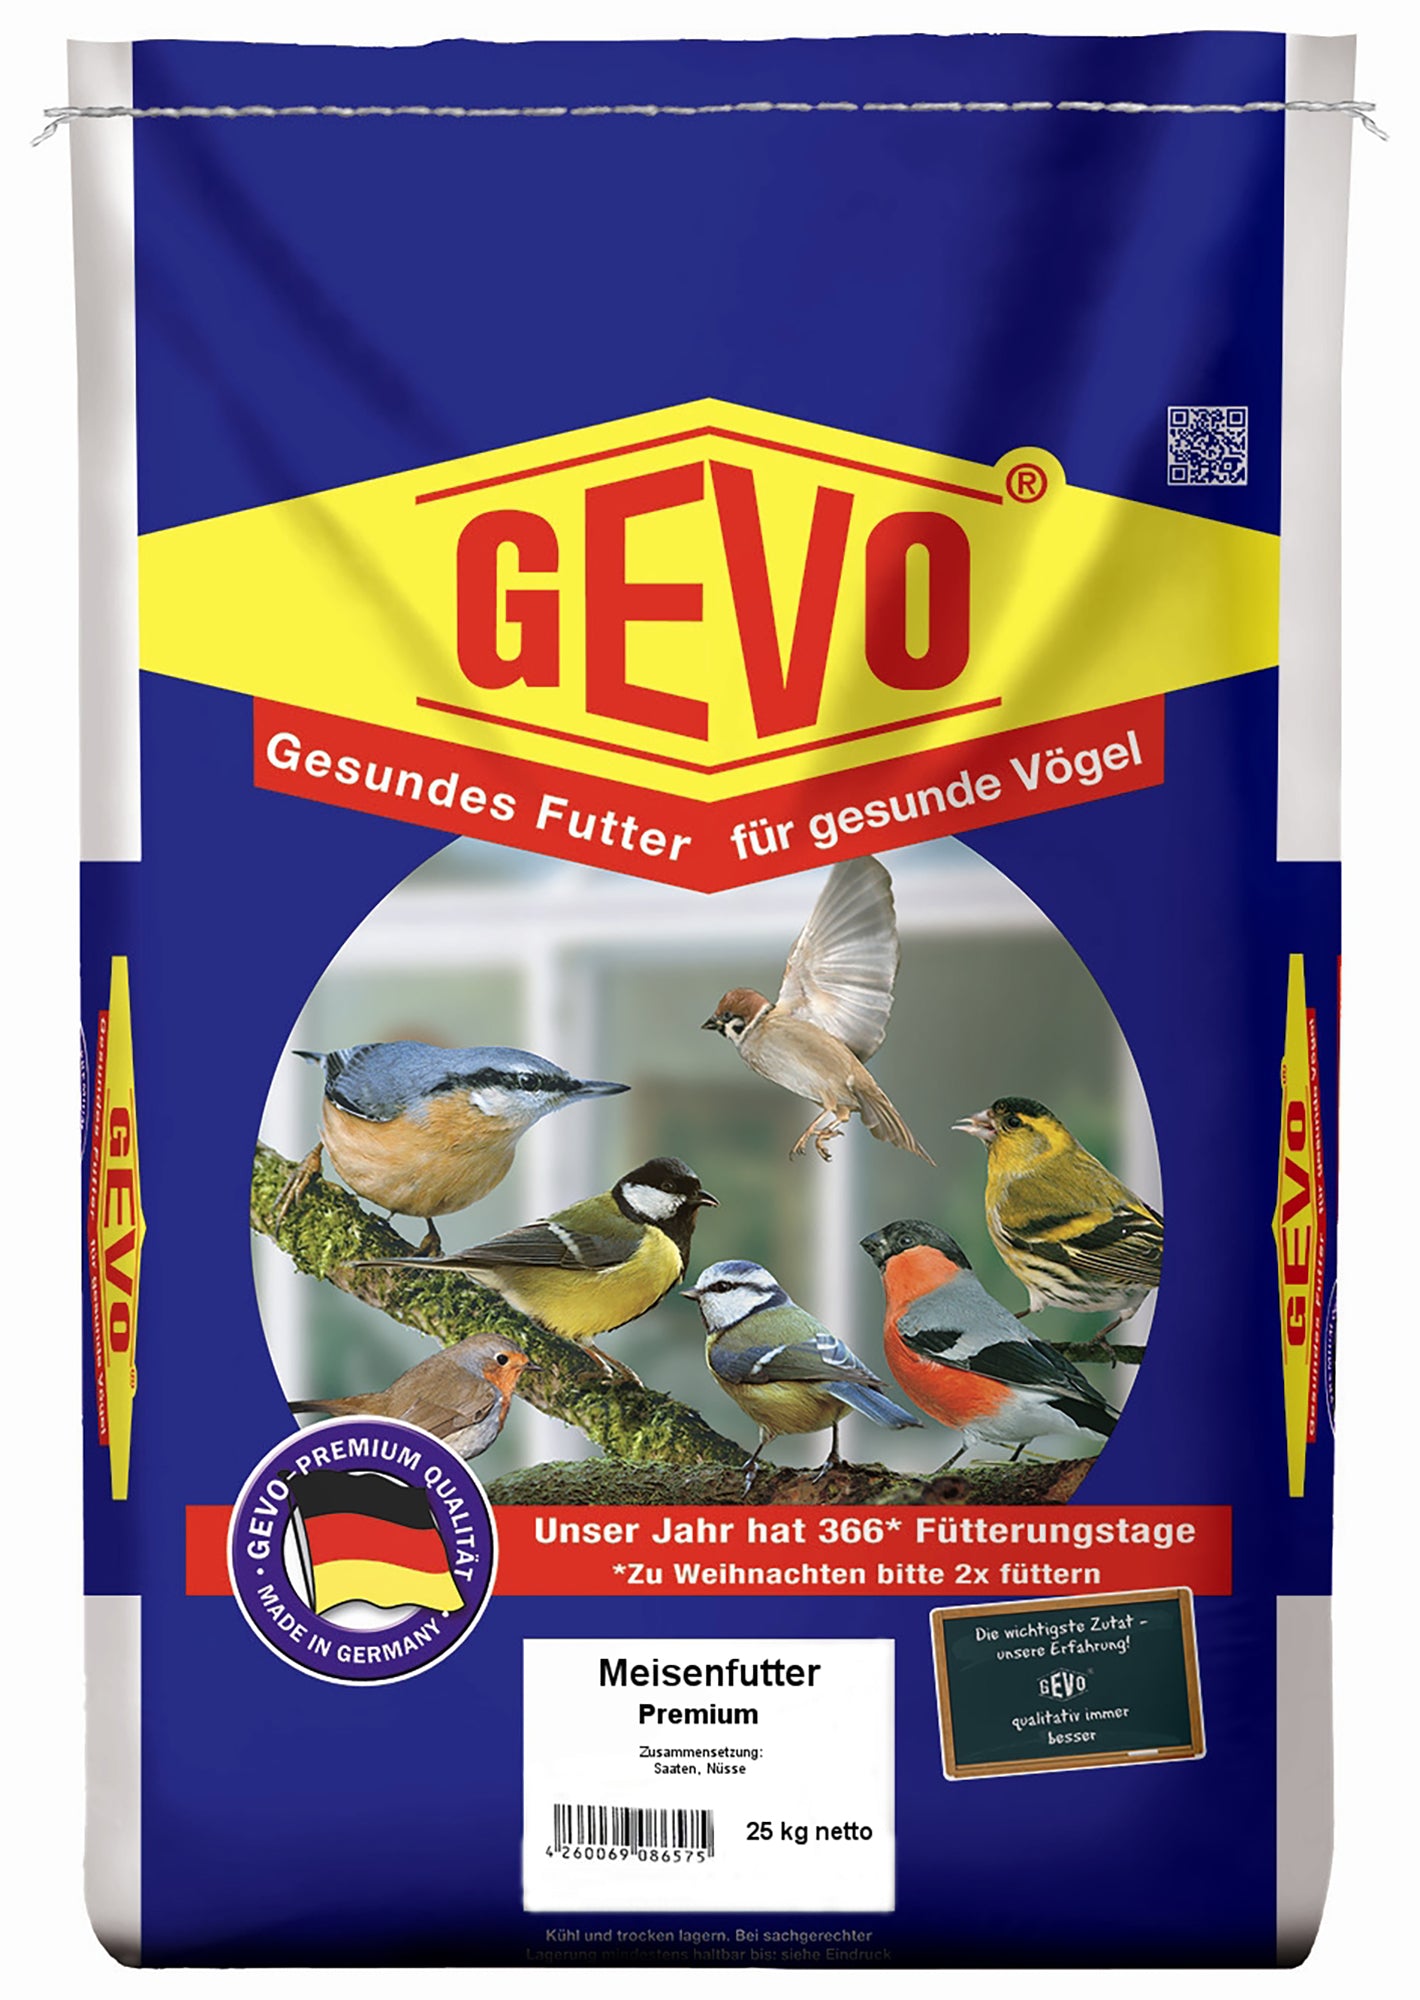 Meisenfutter Premium (25 kg) | Meisenfutter von GEVO